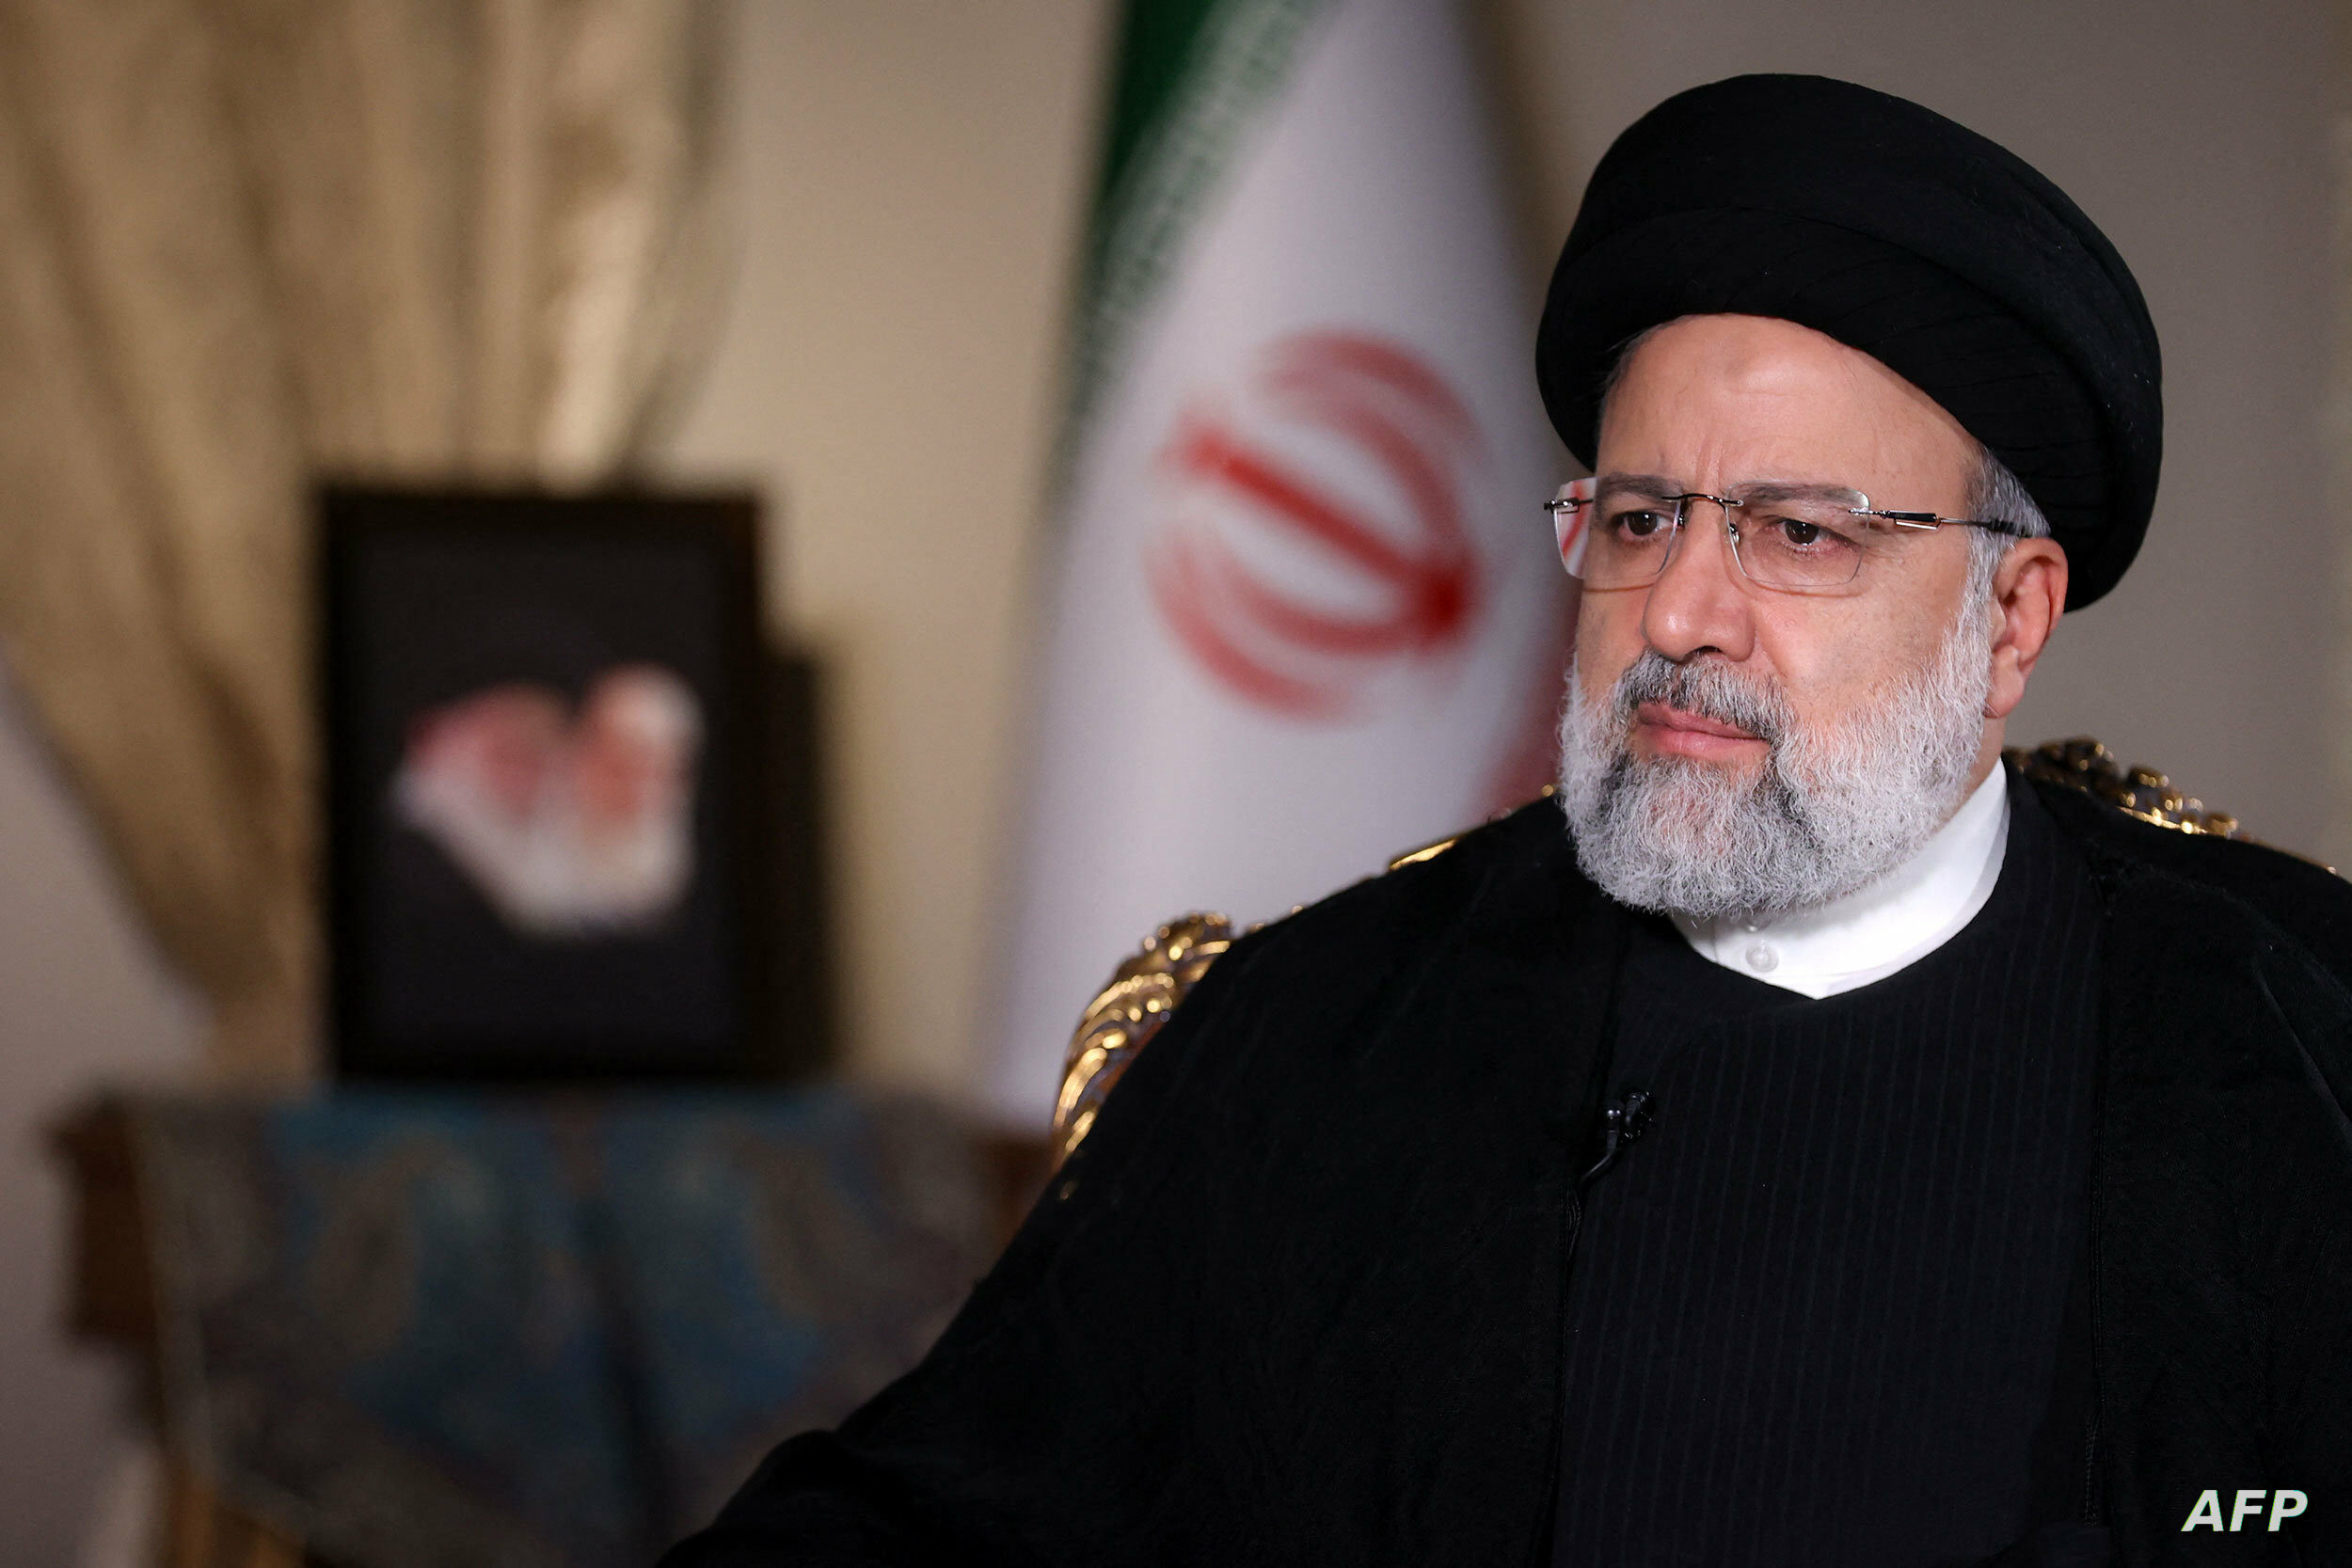 إيران: غموض حول وضع الرئيس إبراهيم رئيسي إثر تعرض مروحية كانت تقله لـ”حادث”